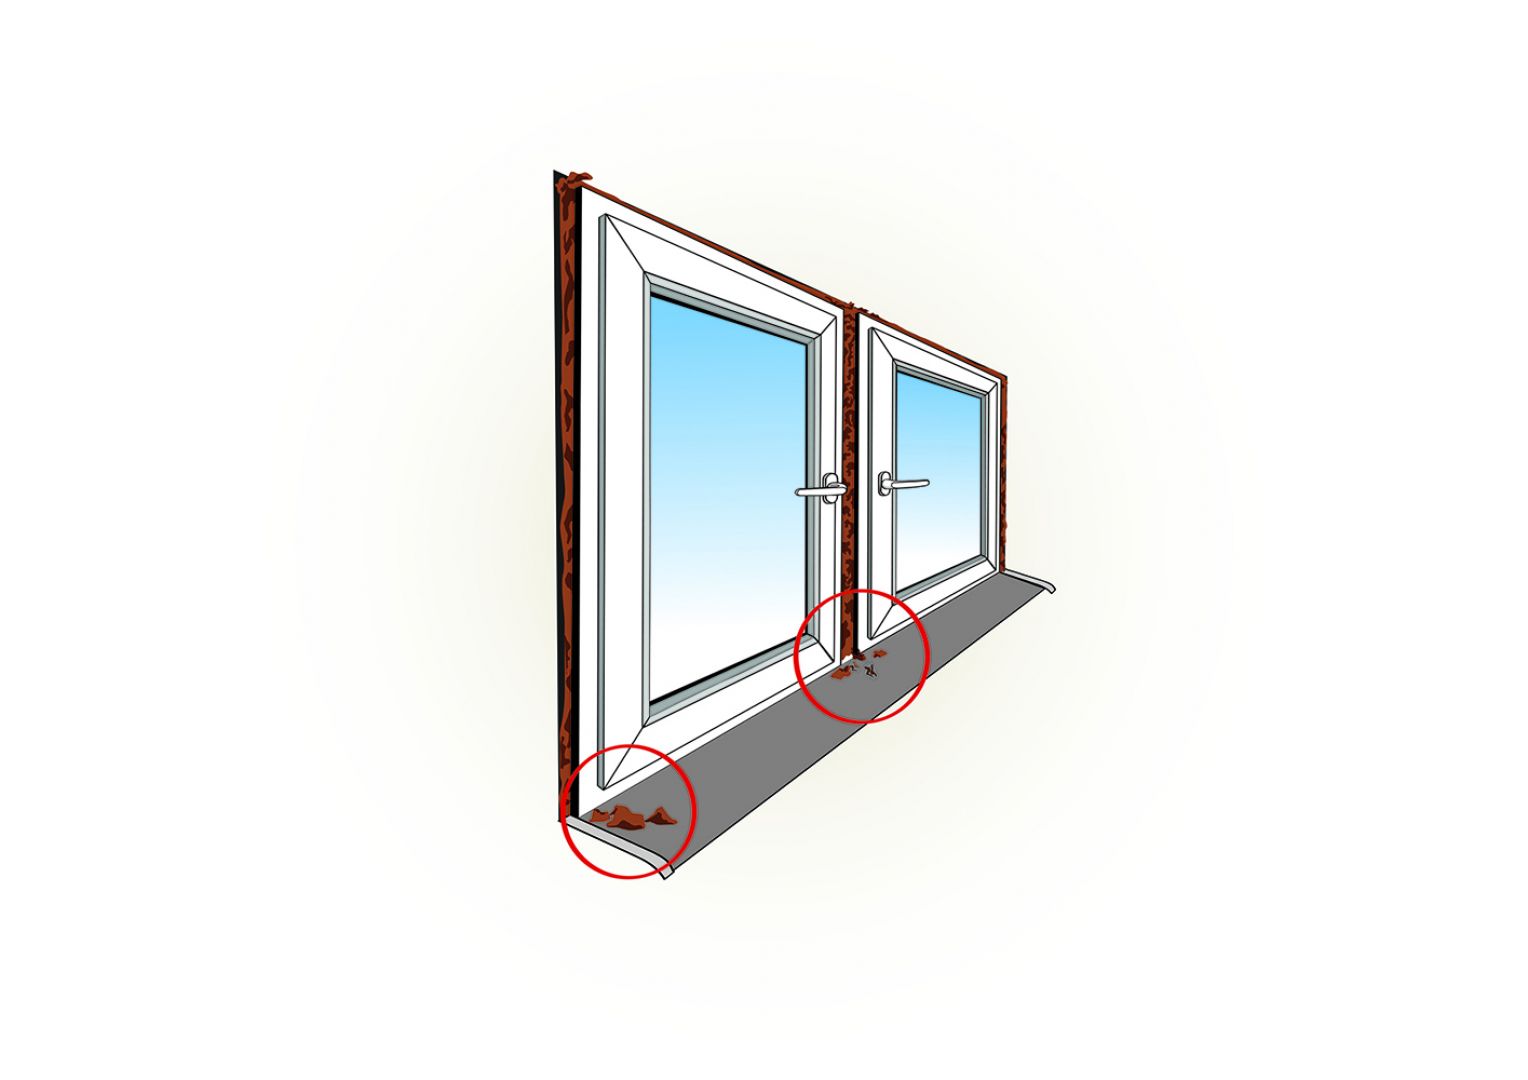 przyczyną aż 60 procent zgłoszeń reklamowych dotyczących okien są wady montażu, a źle zamontowane okna mogą generować nawet 45 procent strat energii cieplnej w pomieszczeniu. Fot. POiD